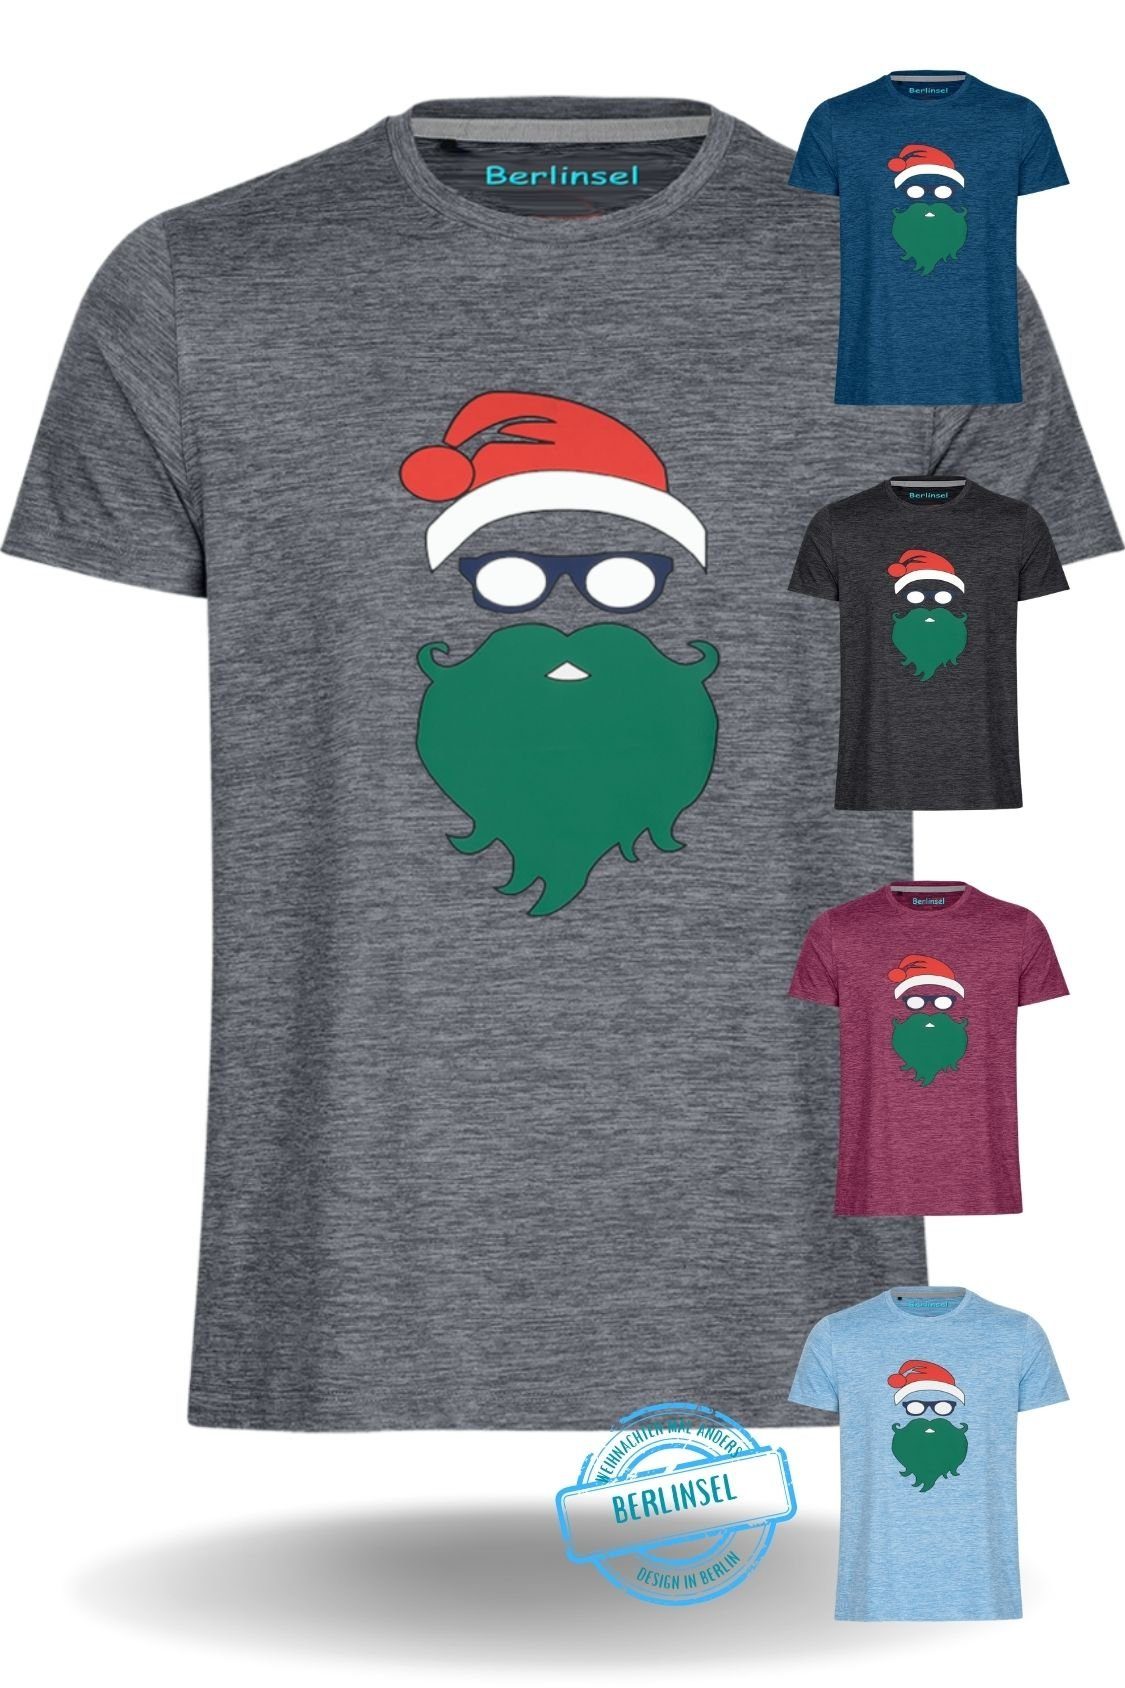 grau Berlinsel Weihnachtsfeier, Weihnachtsshirt Männer Herren Weihnachtsoutfit T-Shirt Printshirt Weihnachtsgeschenk, Weihnachtsfoto